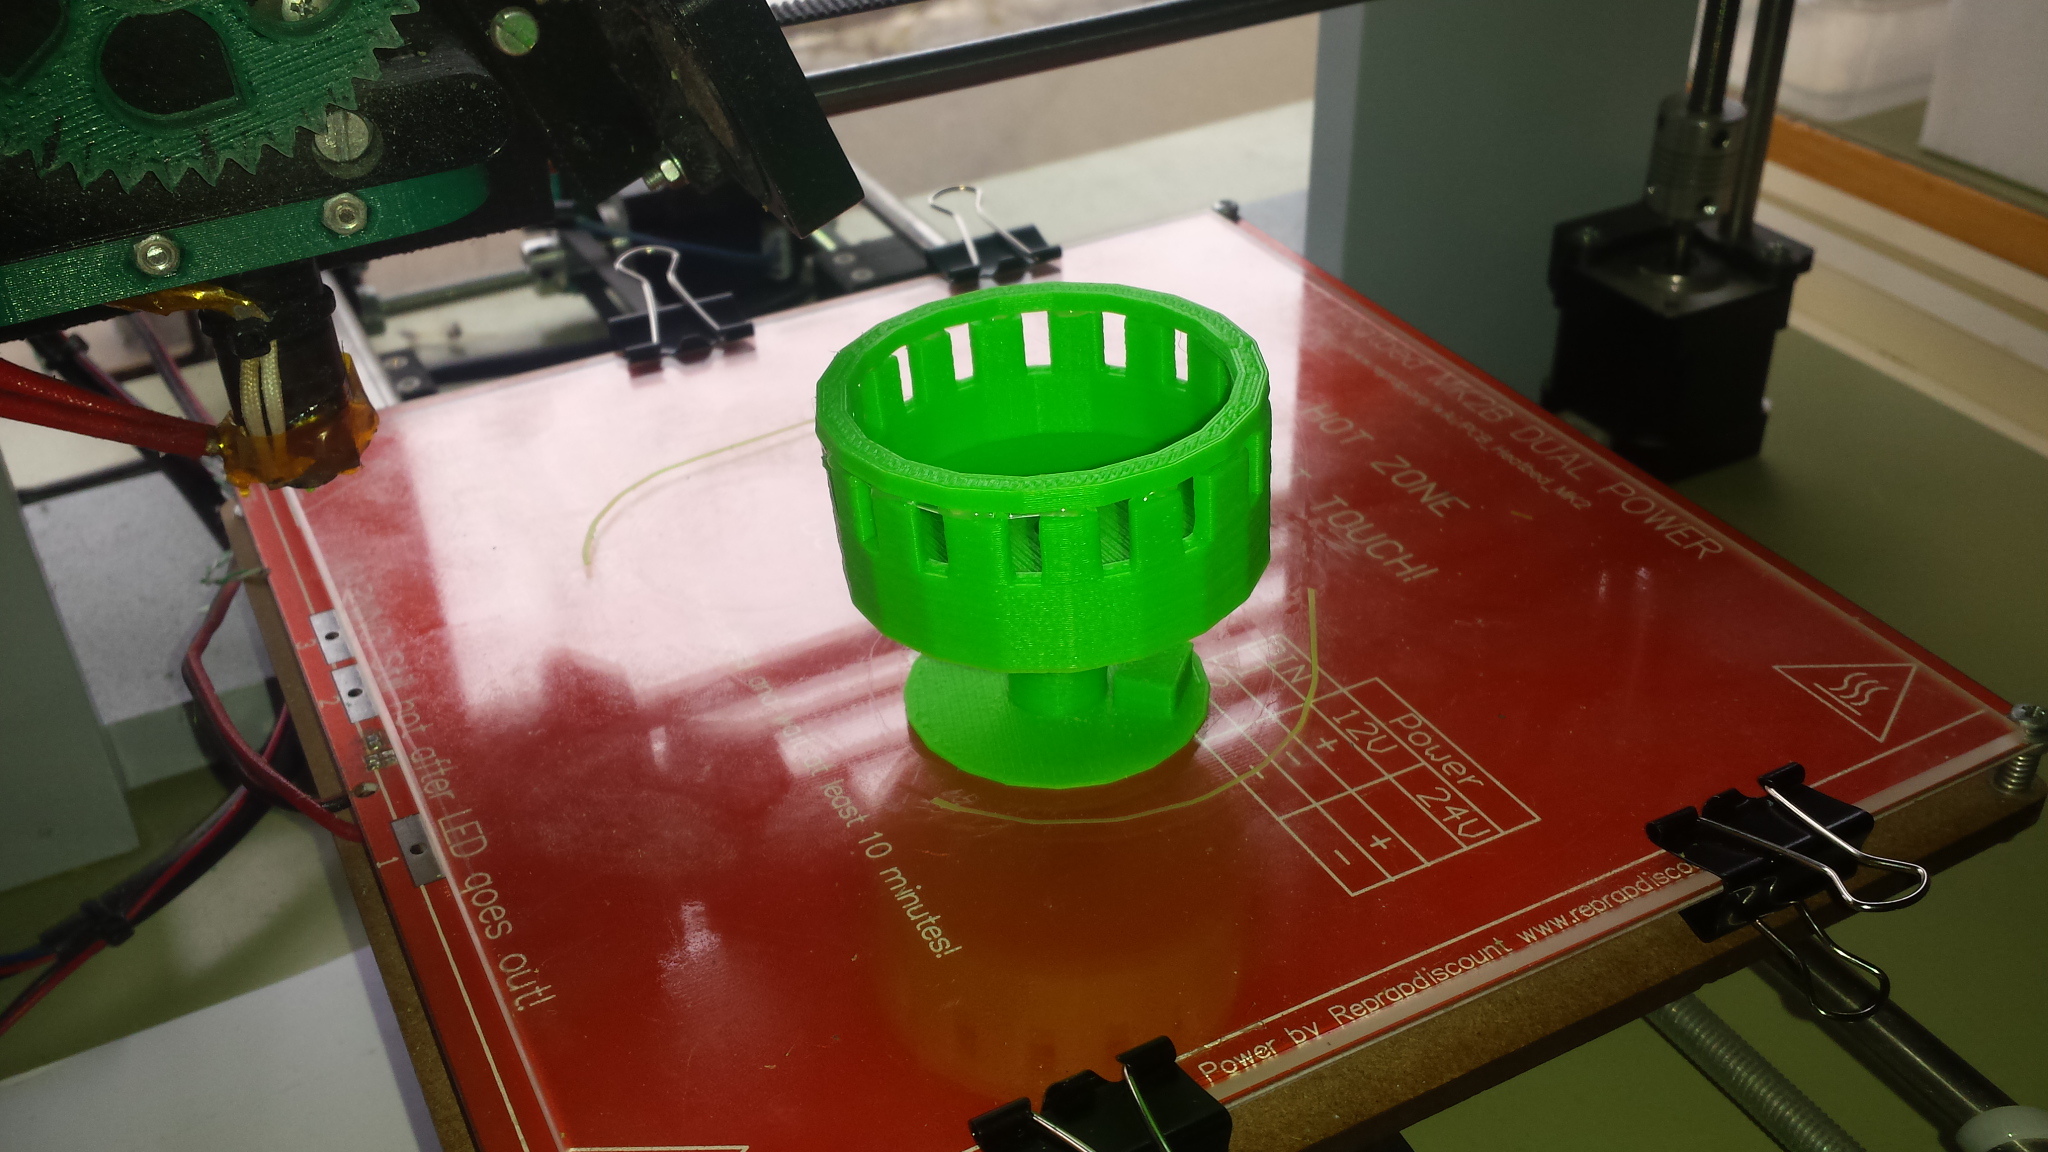 Zoòtrop acabat d'imprimir en 3D